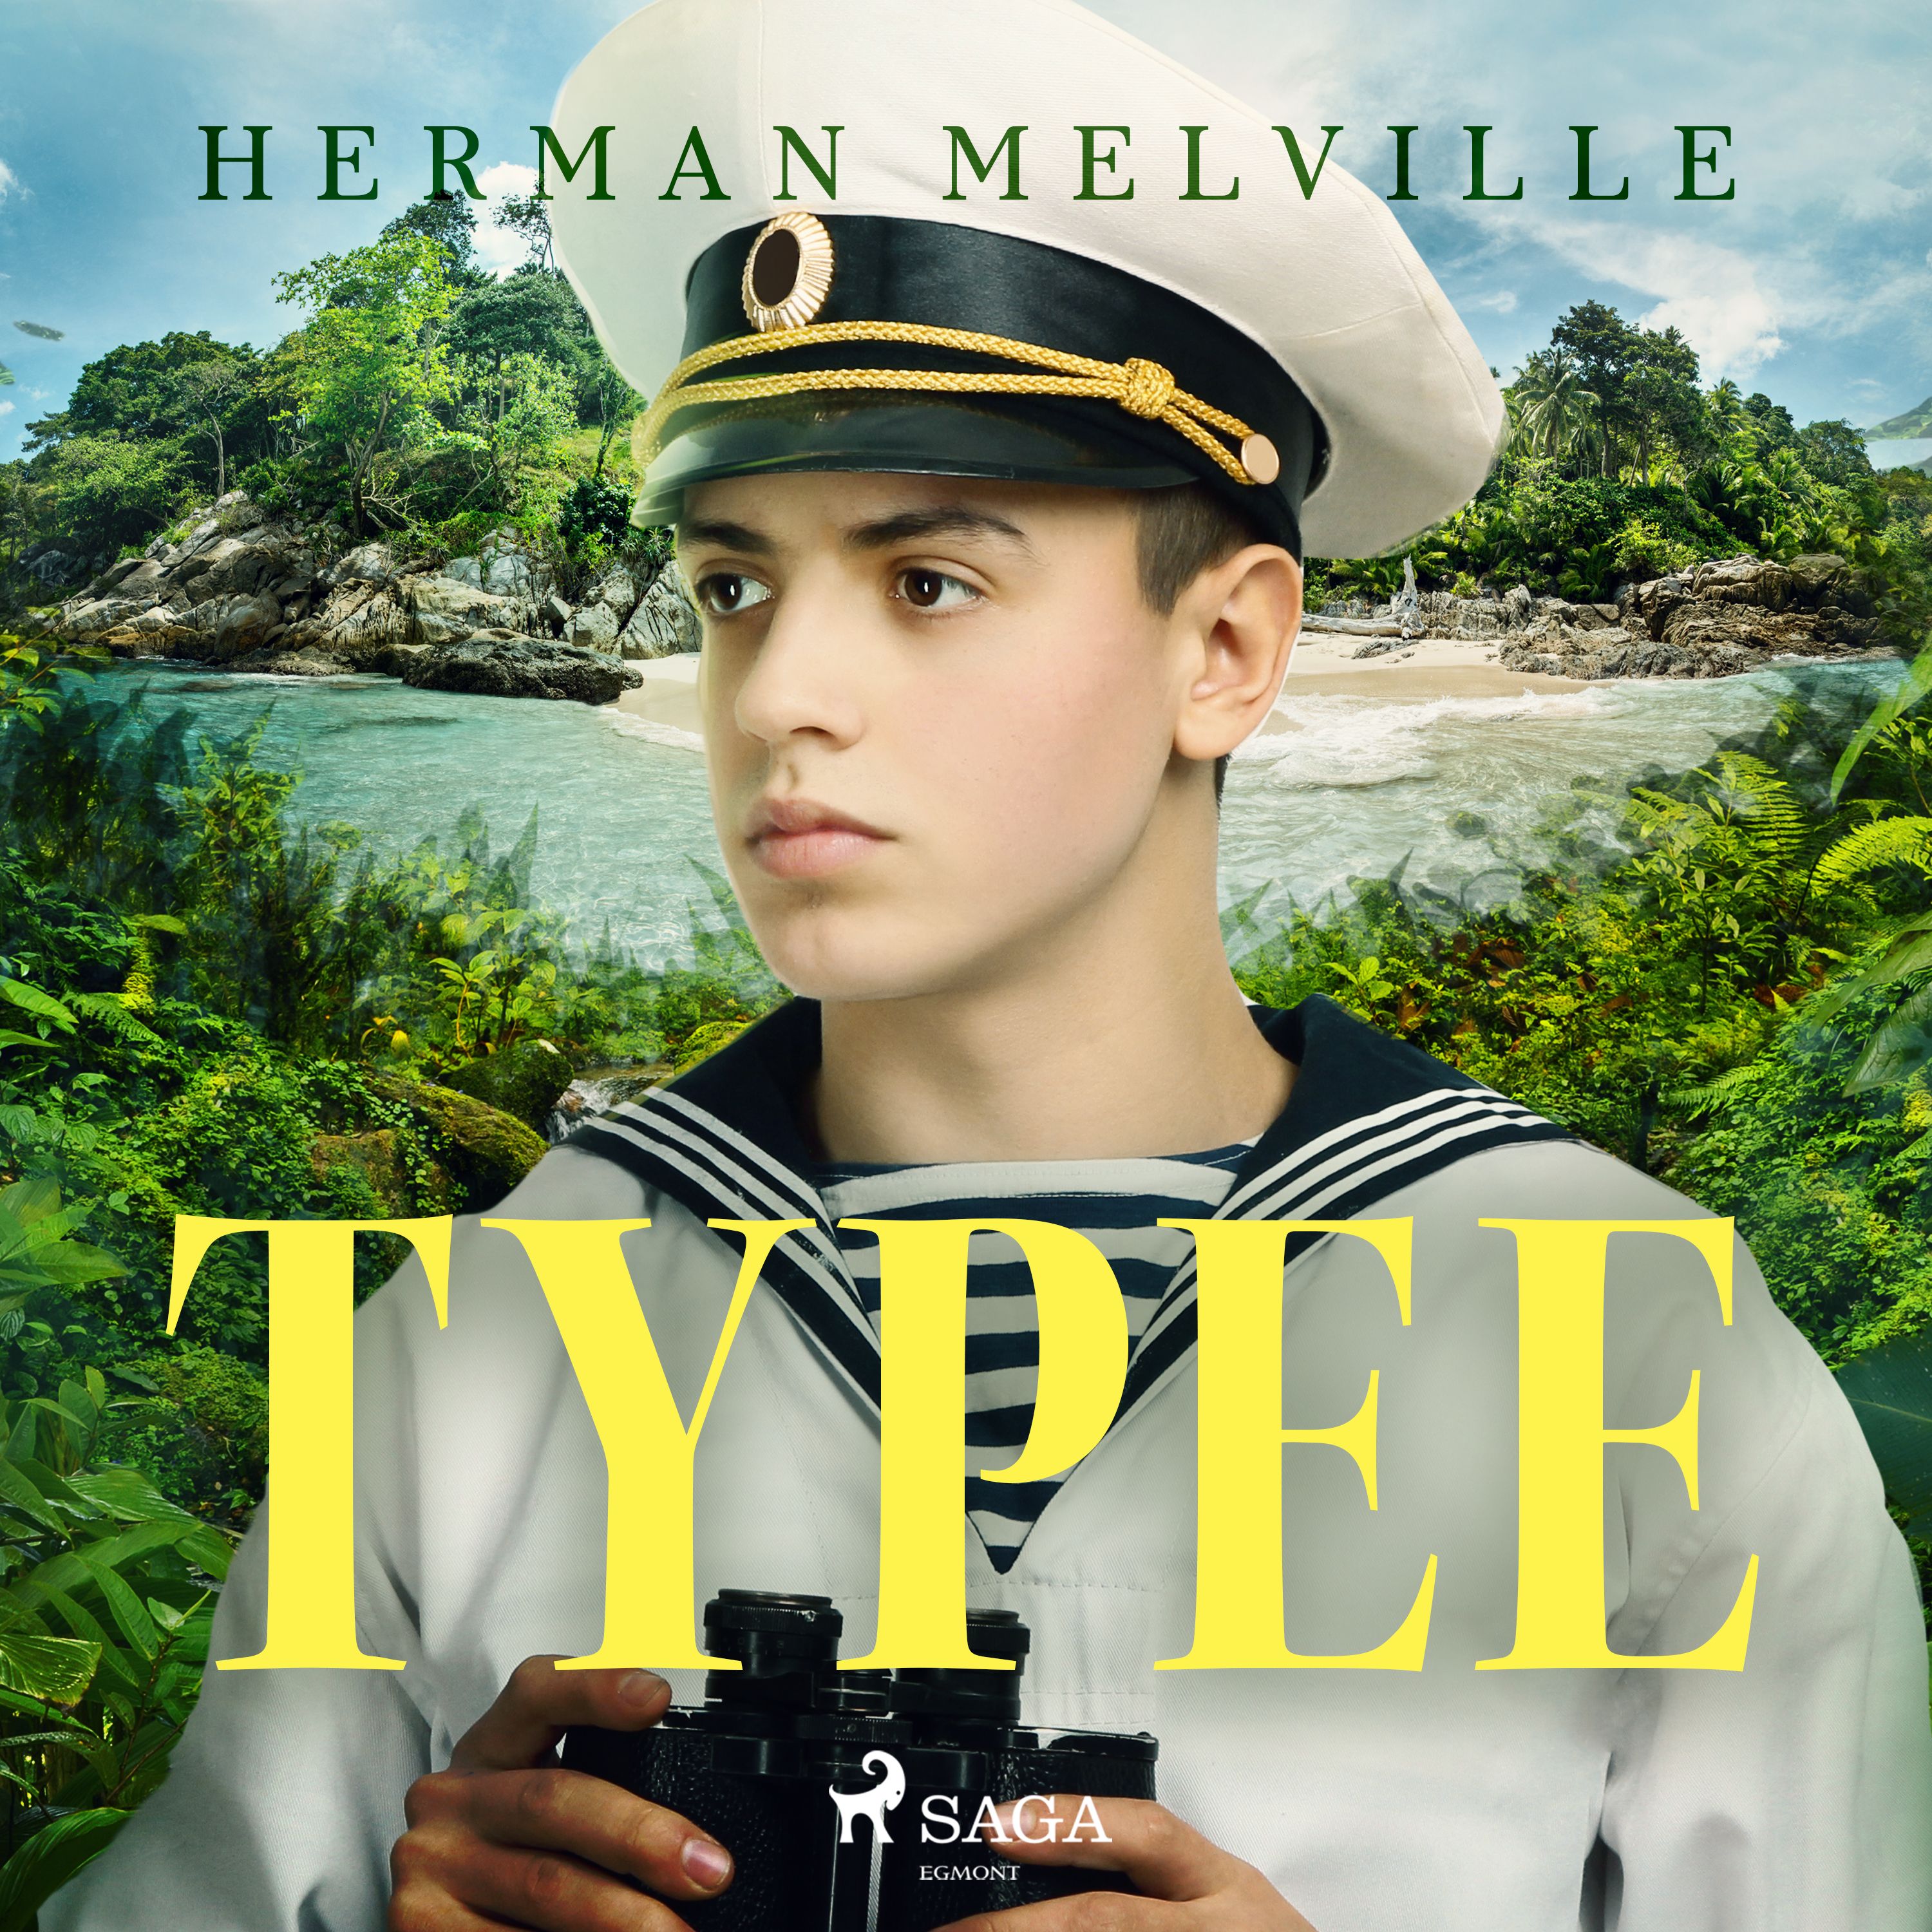 Typee, ljudbok av Herman Melville